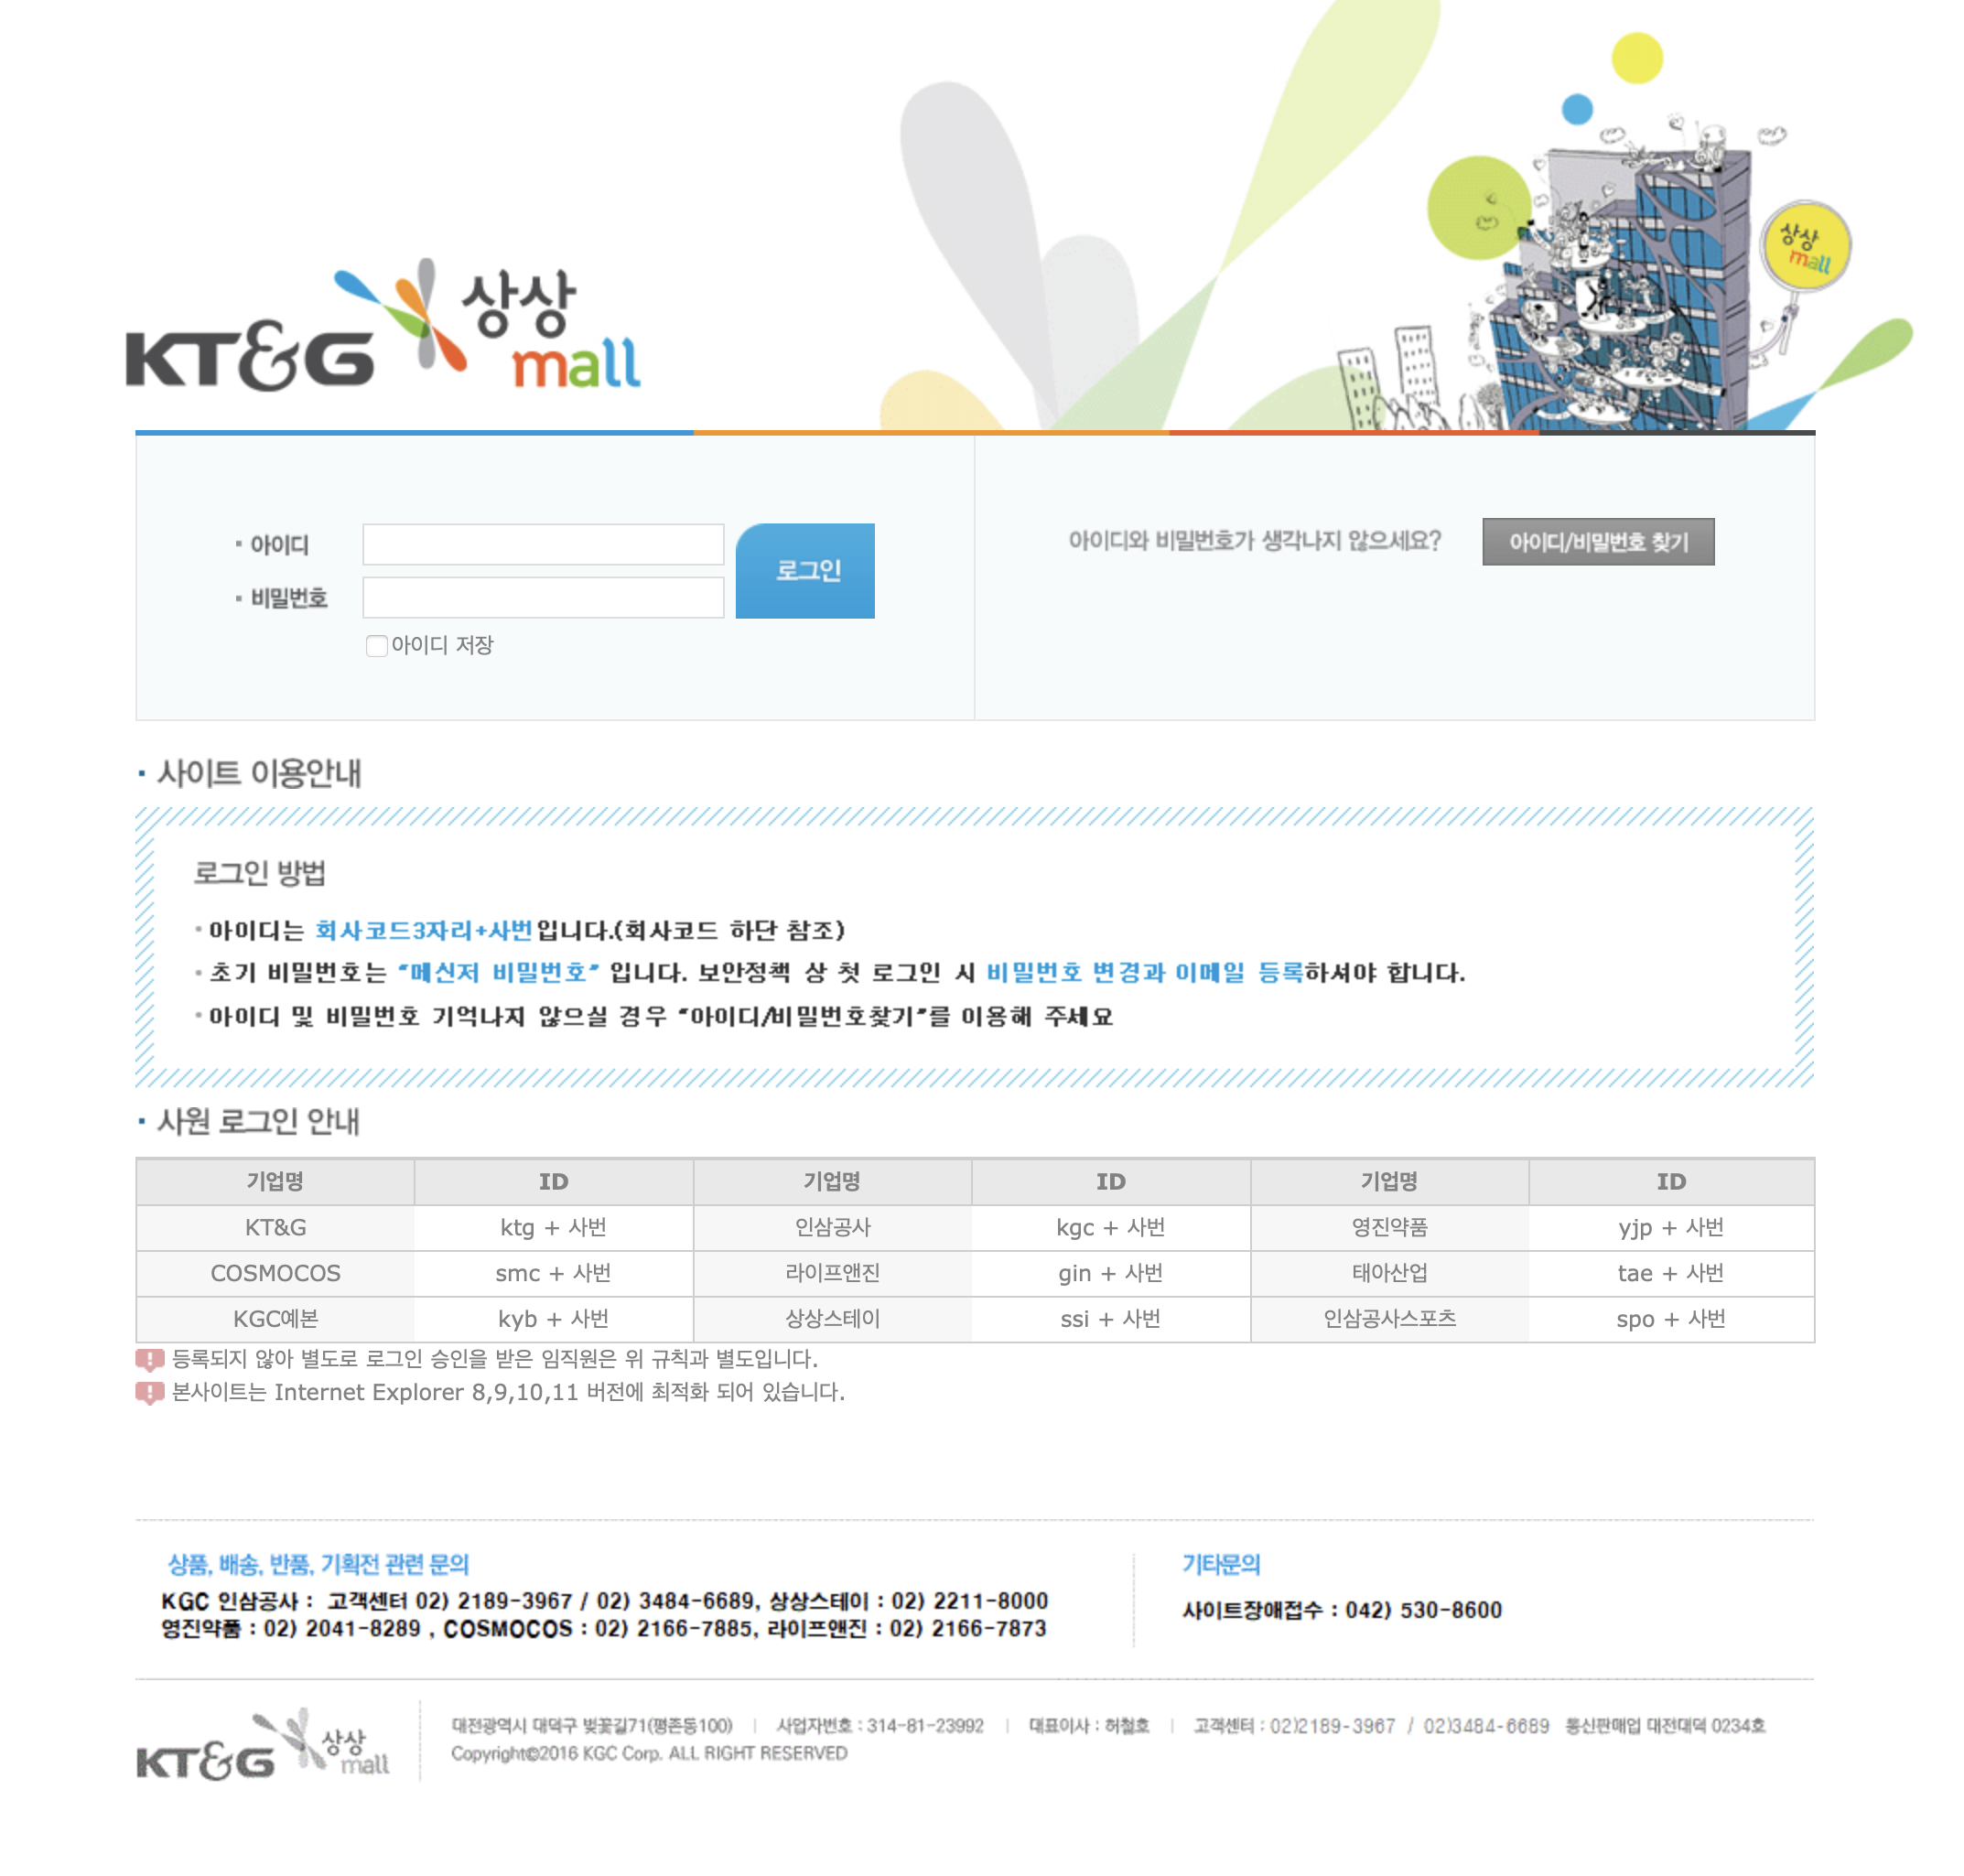 KT&G 그룹사 상상몰 (https://www.sangsangmall.co.kr)